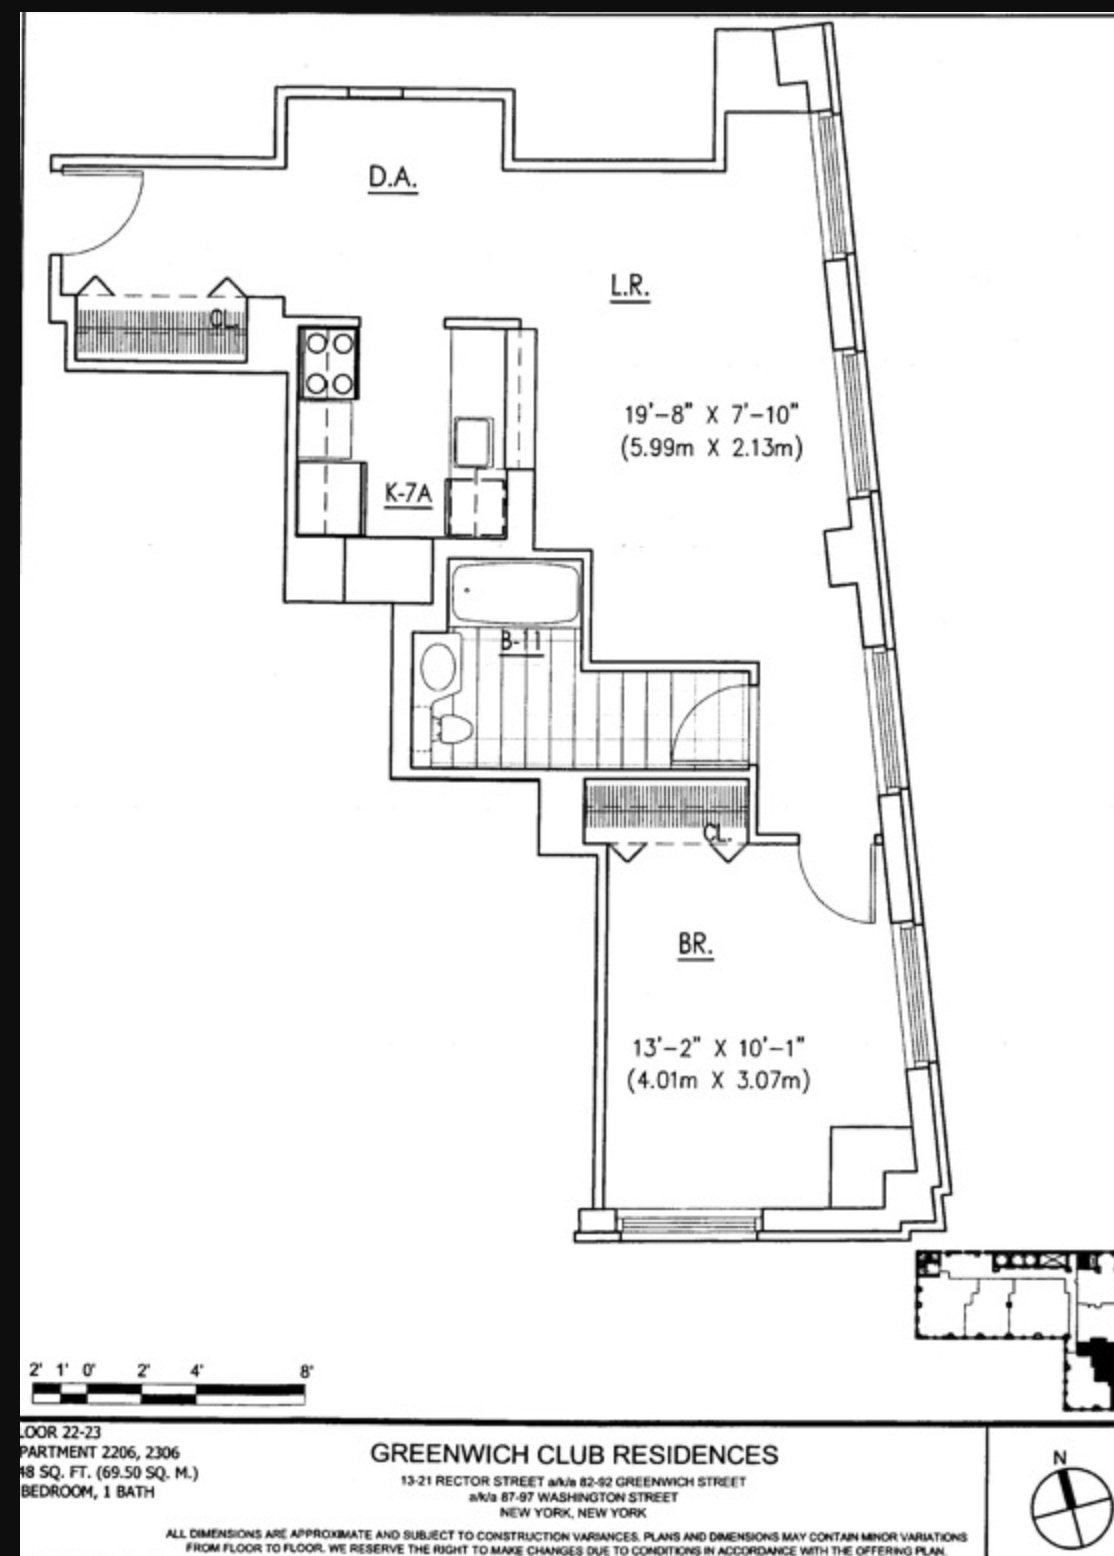 Floorplan for 88 Greenwich Street, 2206